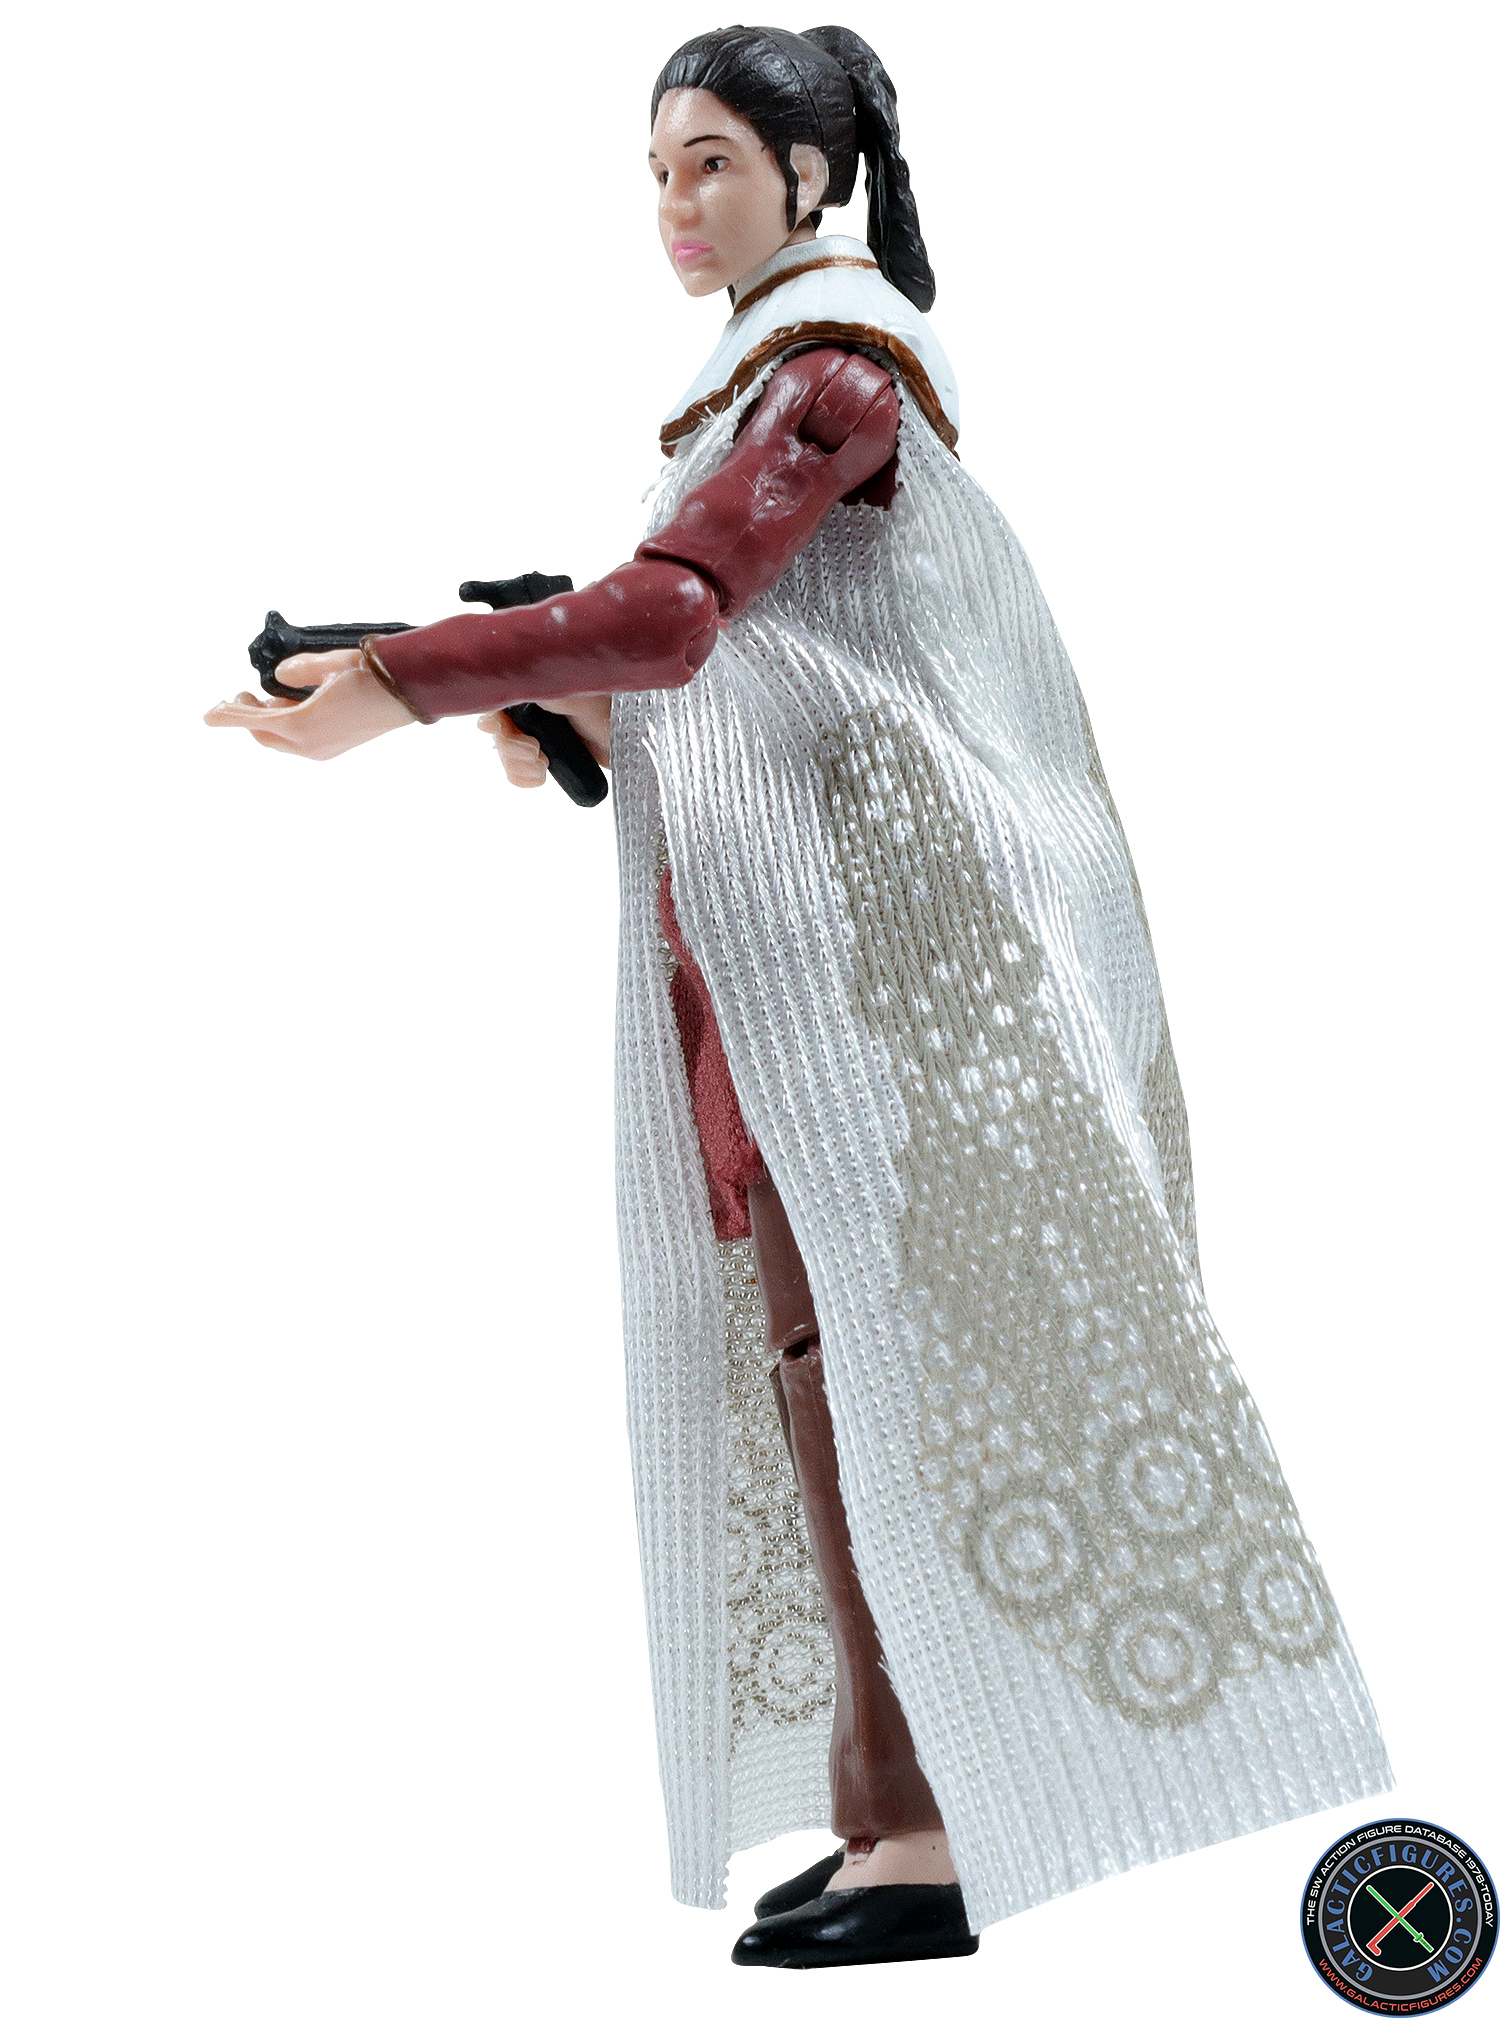 Princess Leia Organa Bespin Outfit